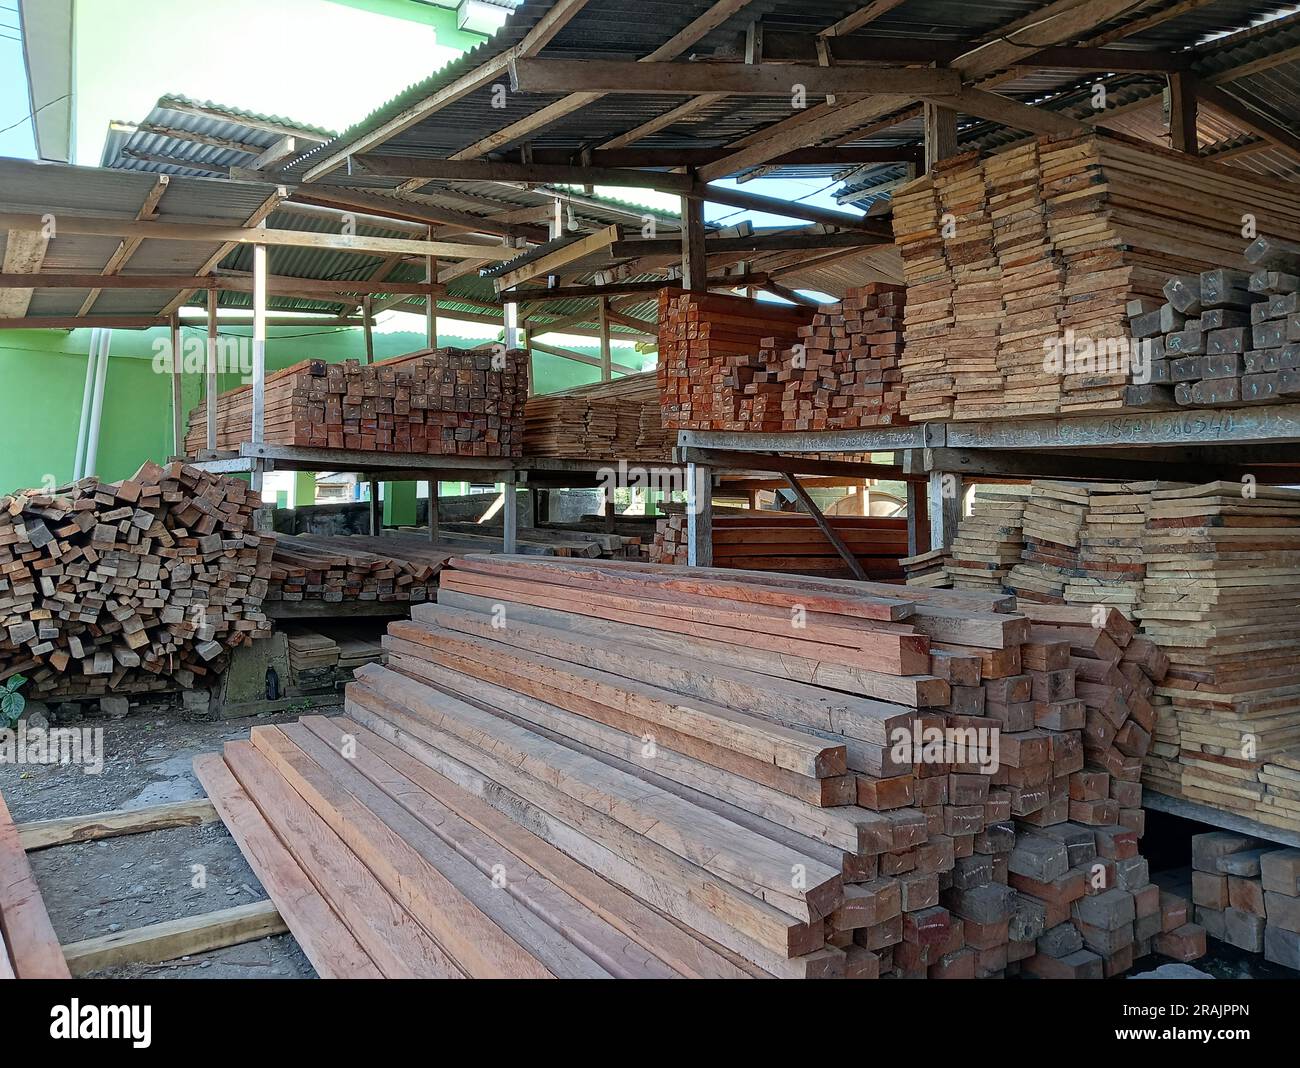 Ein Ort zum Verkauf von Holz für Baumaterialien verschiedener Arten und Größen. Stockfoto